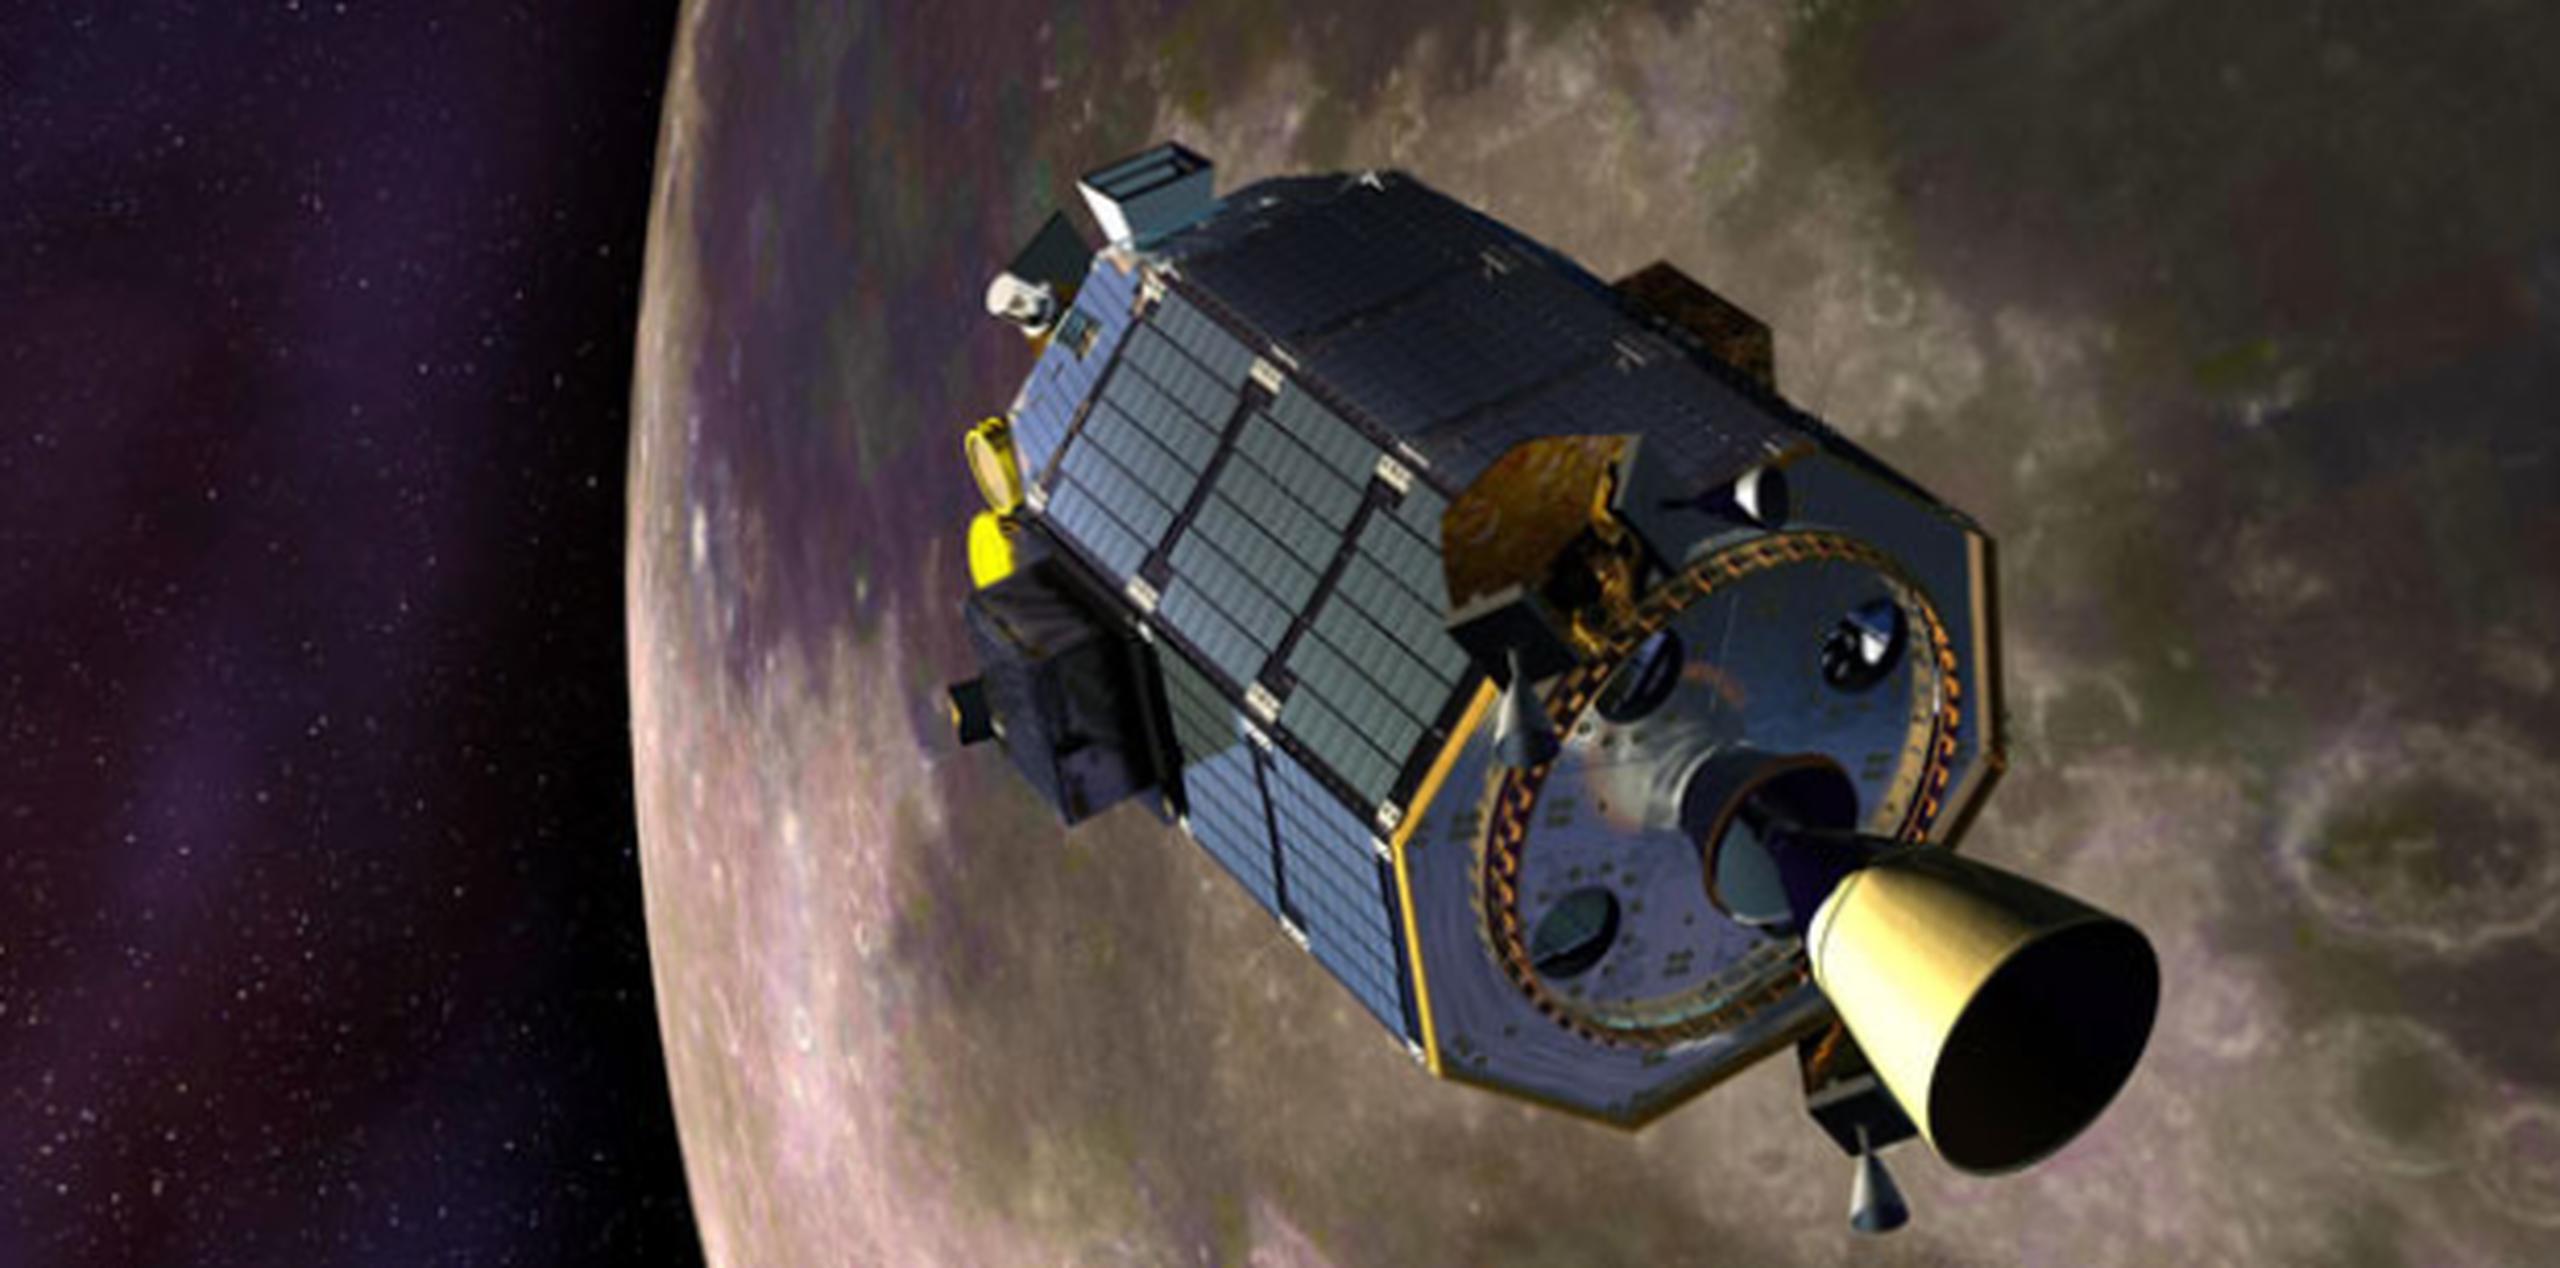 Imagen artística provista por la NASA del Lunar Atmosphere and Dust Environment Explorer (LADEE), que estudia la exósfera delgada de la Luna y el polvo lunar.(AP)